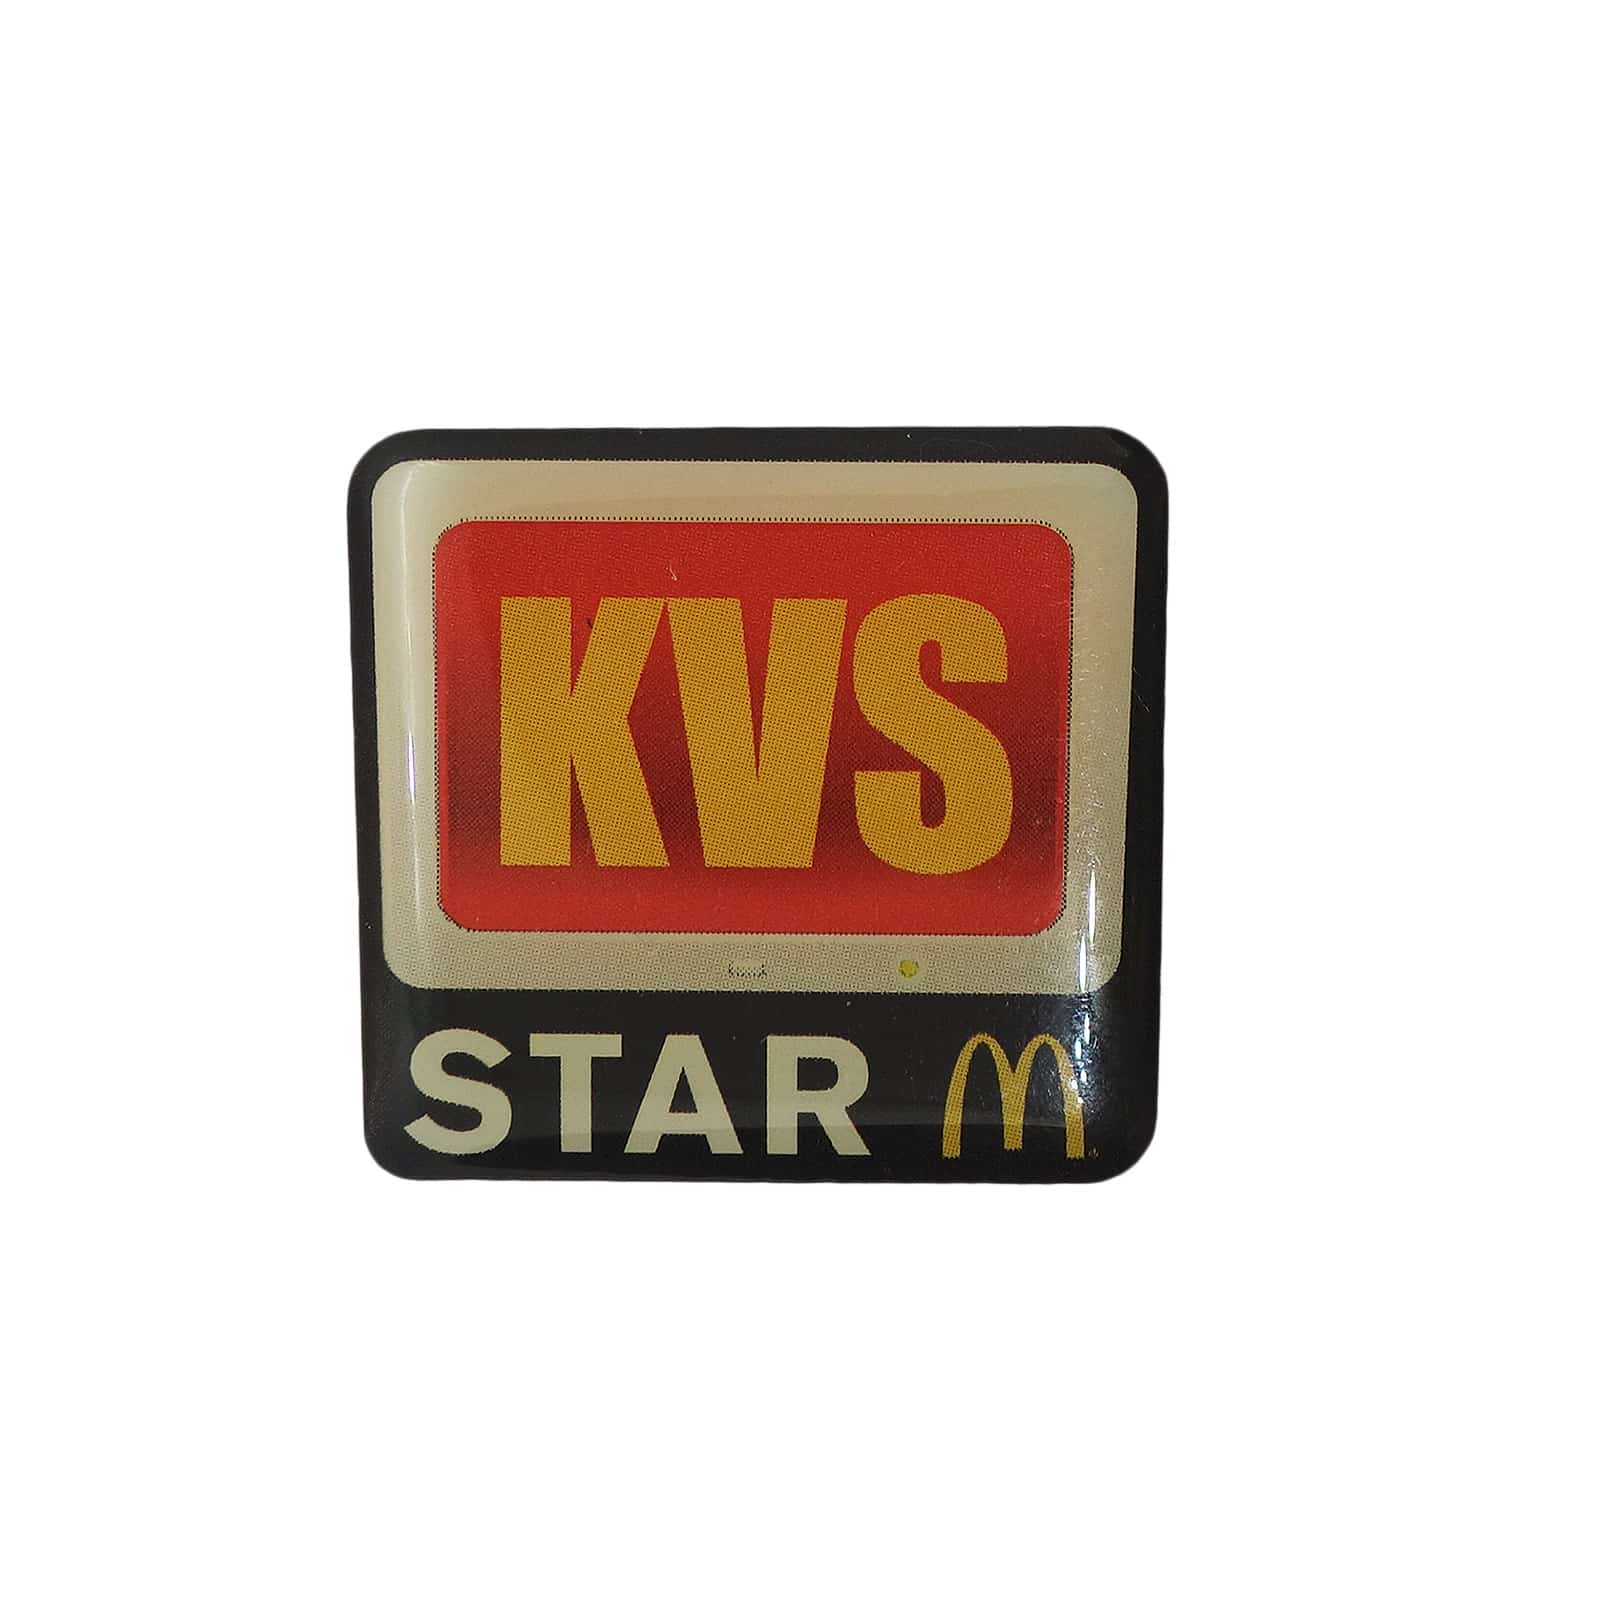 2010 McDonald's KVS Star ピンズ マクドナルド 留め具付き